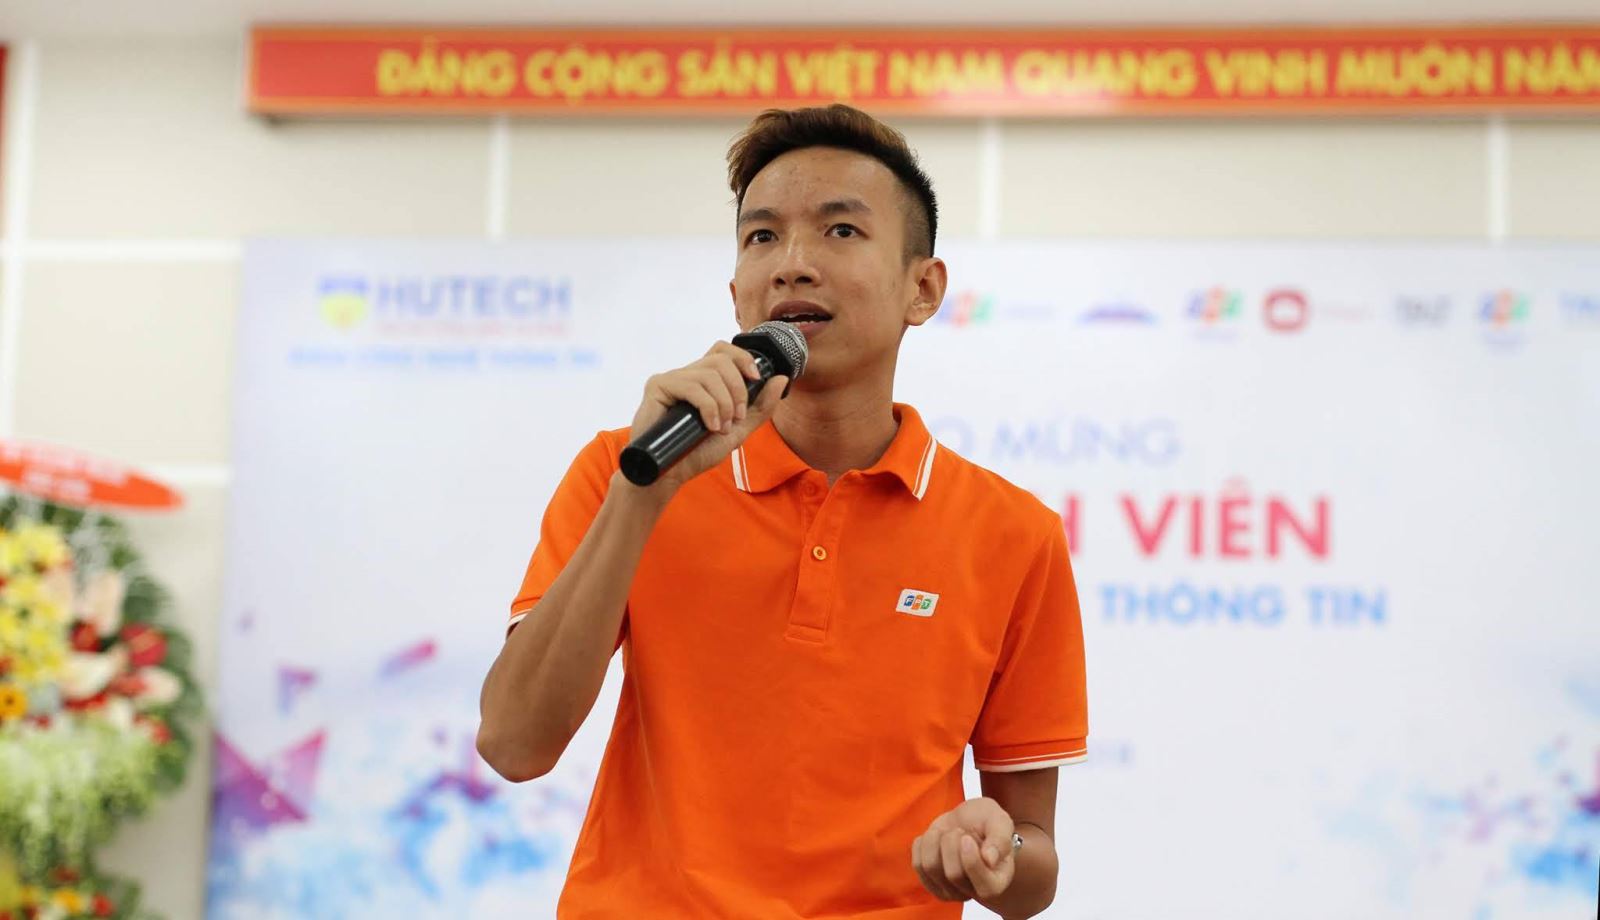 Chuyên gia công nghệ thông tin Nguyễn Ngọc Đỉnh (FPT Telecom) chia sẻ về nghề công nghệ thông tin.